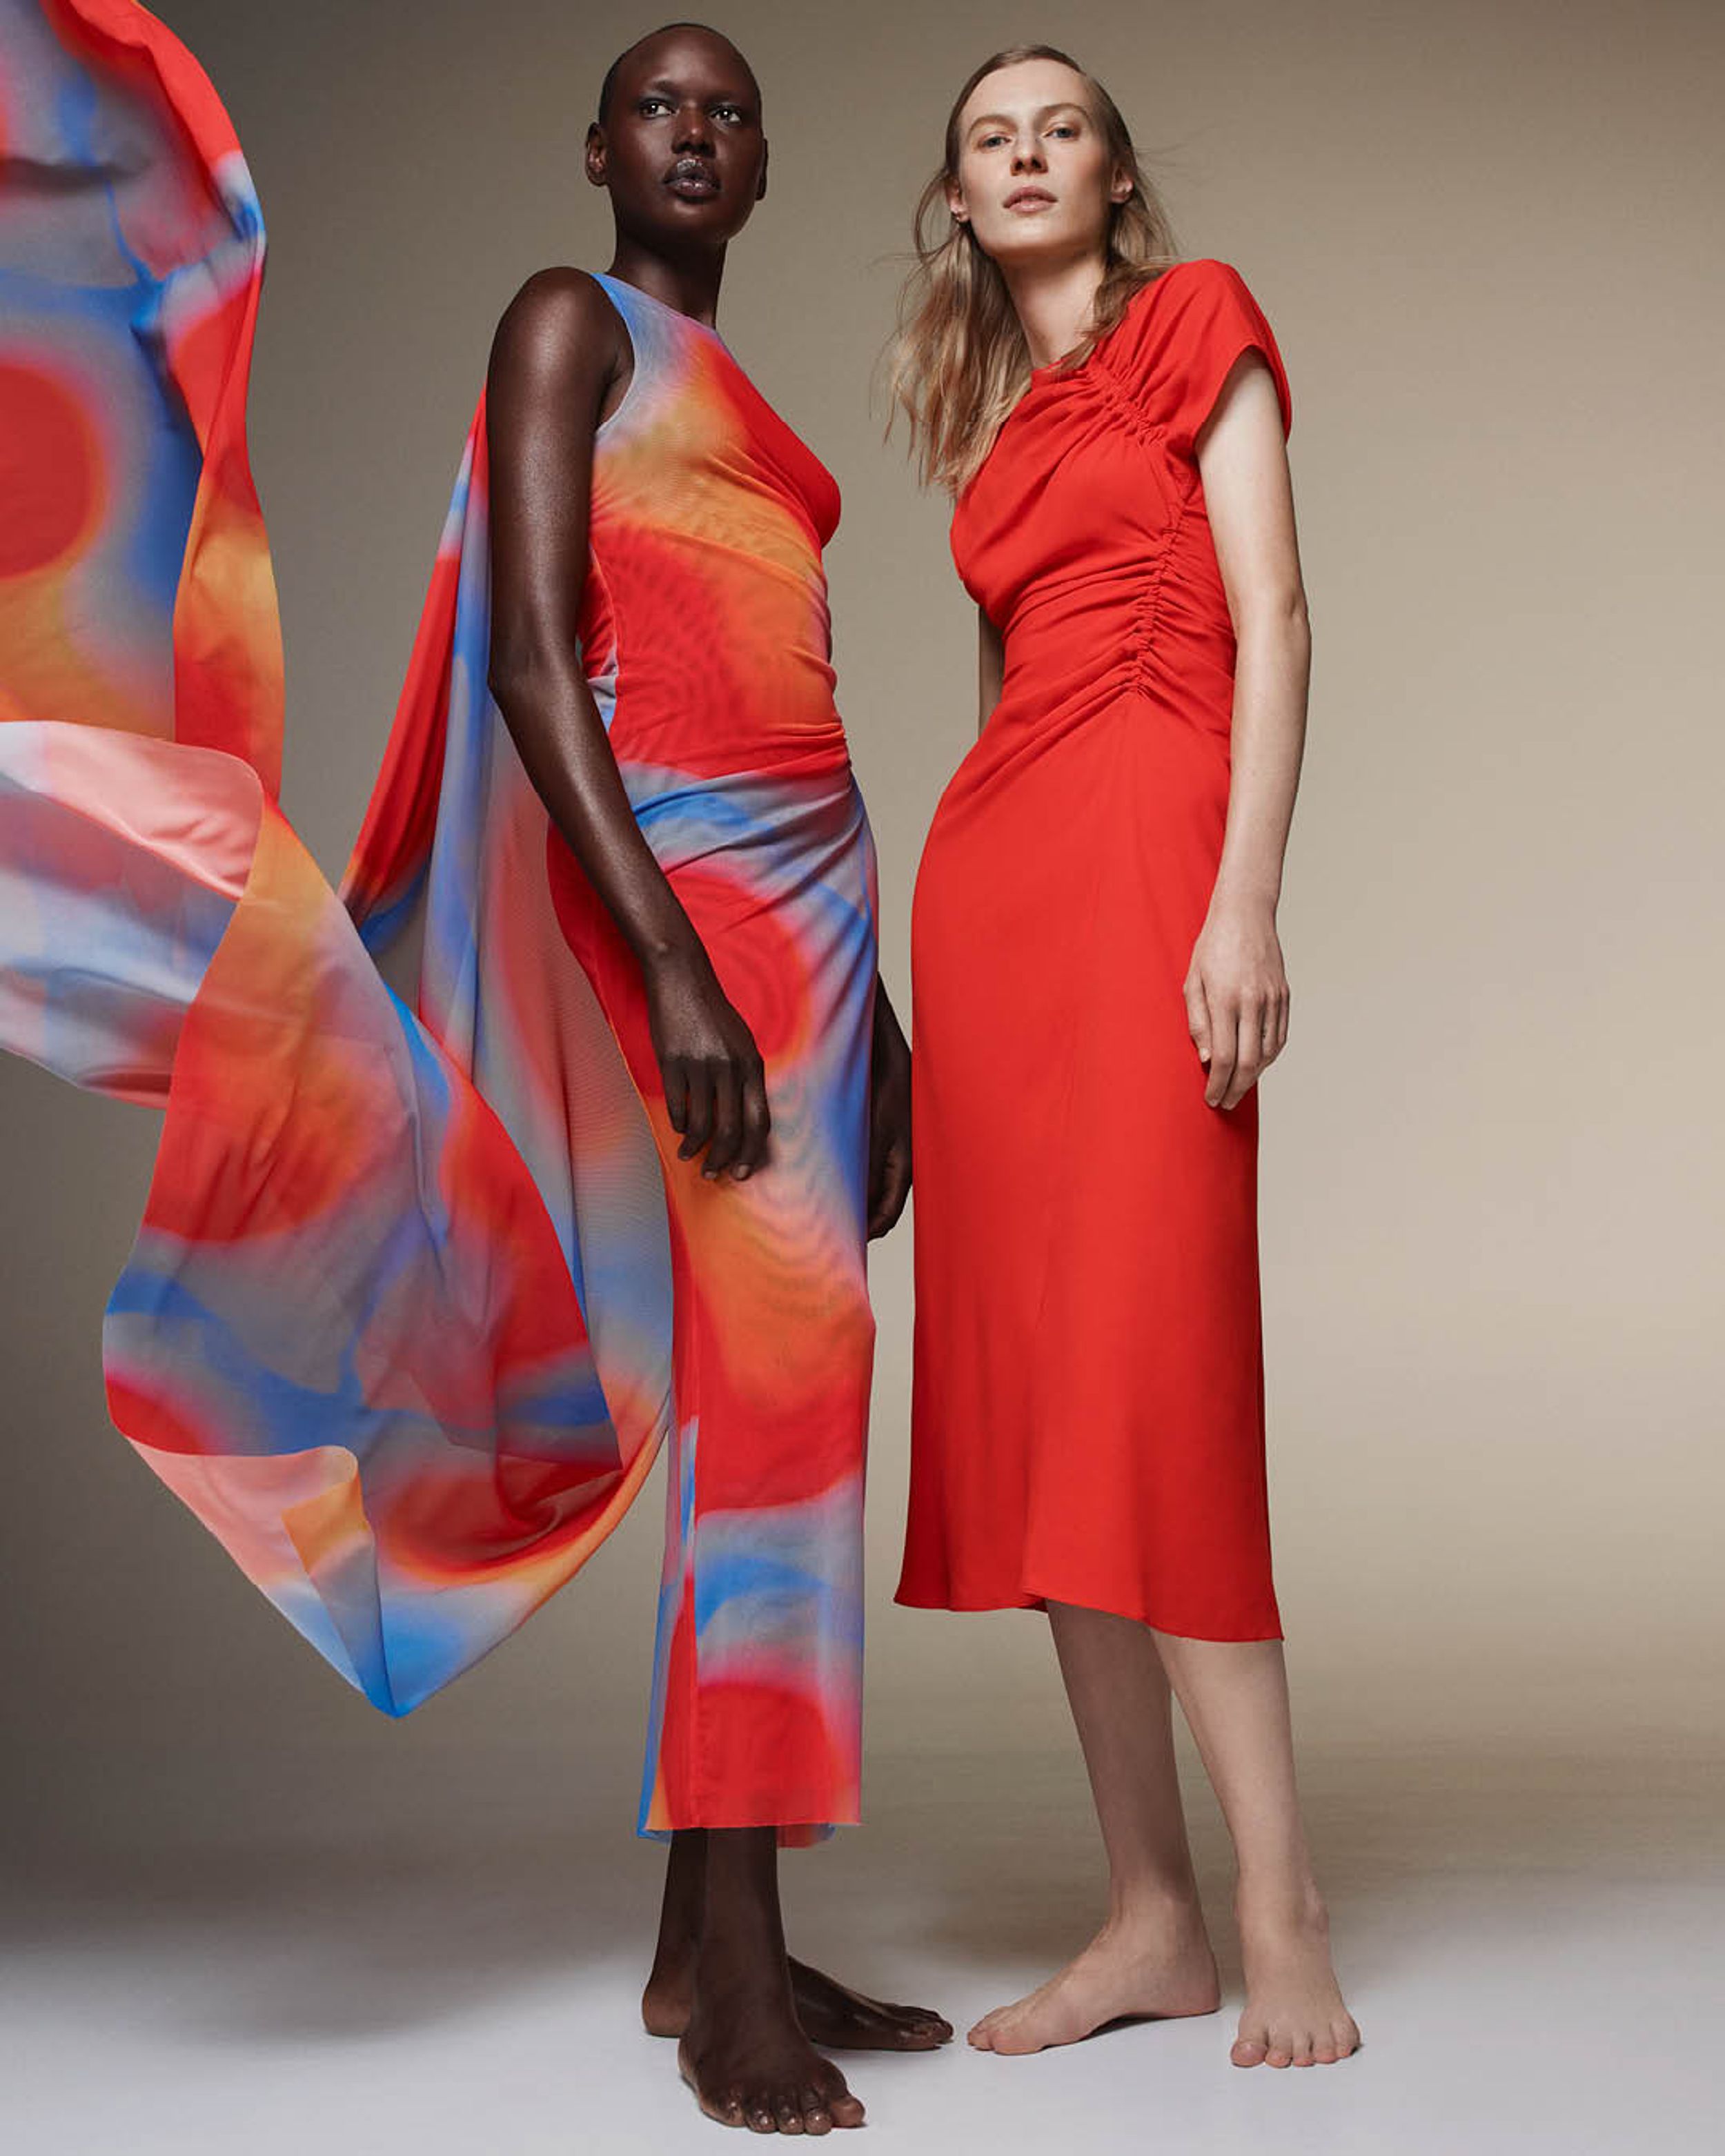 Ajak Deng wearing a mesh orange and red dress standing beside Julia Nobis wearing a gathered orange dress 